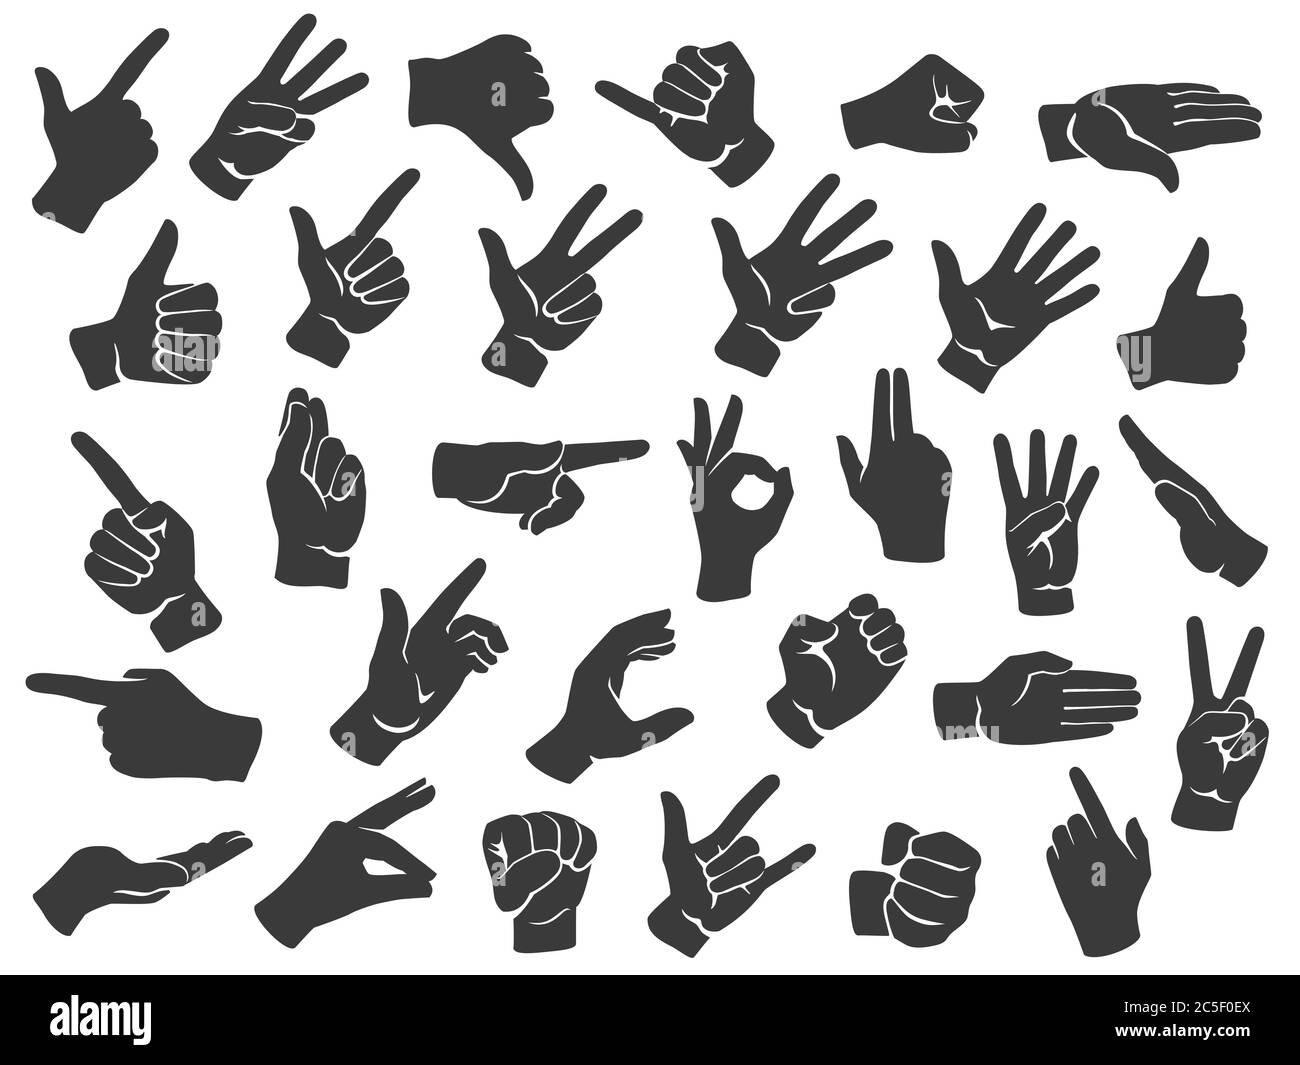 Symbole für die Silhouette der Handbewegung. Man Hände Gesten, Zeigefinger und Daumen nach oben wie Symbol Schablone Vektor-Set Stock Vektor